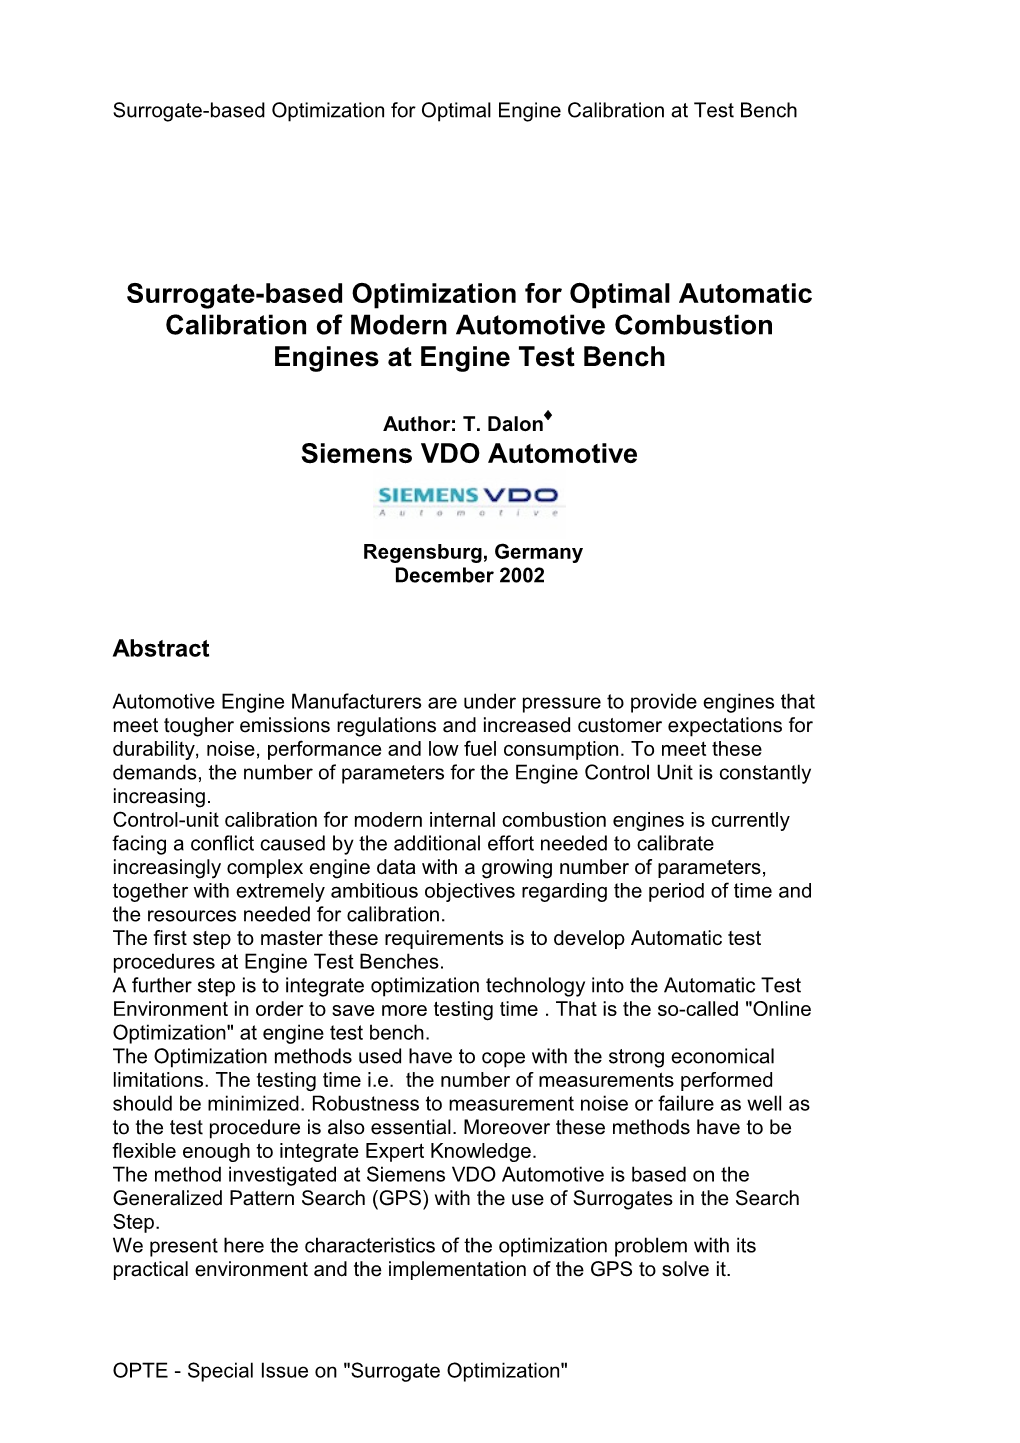 Surrogate-Based Optimization for Optimal Engine Calibration at Test Bench